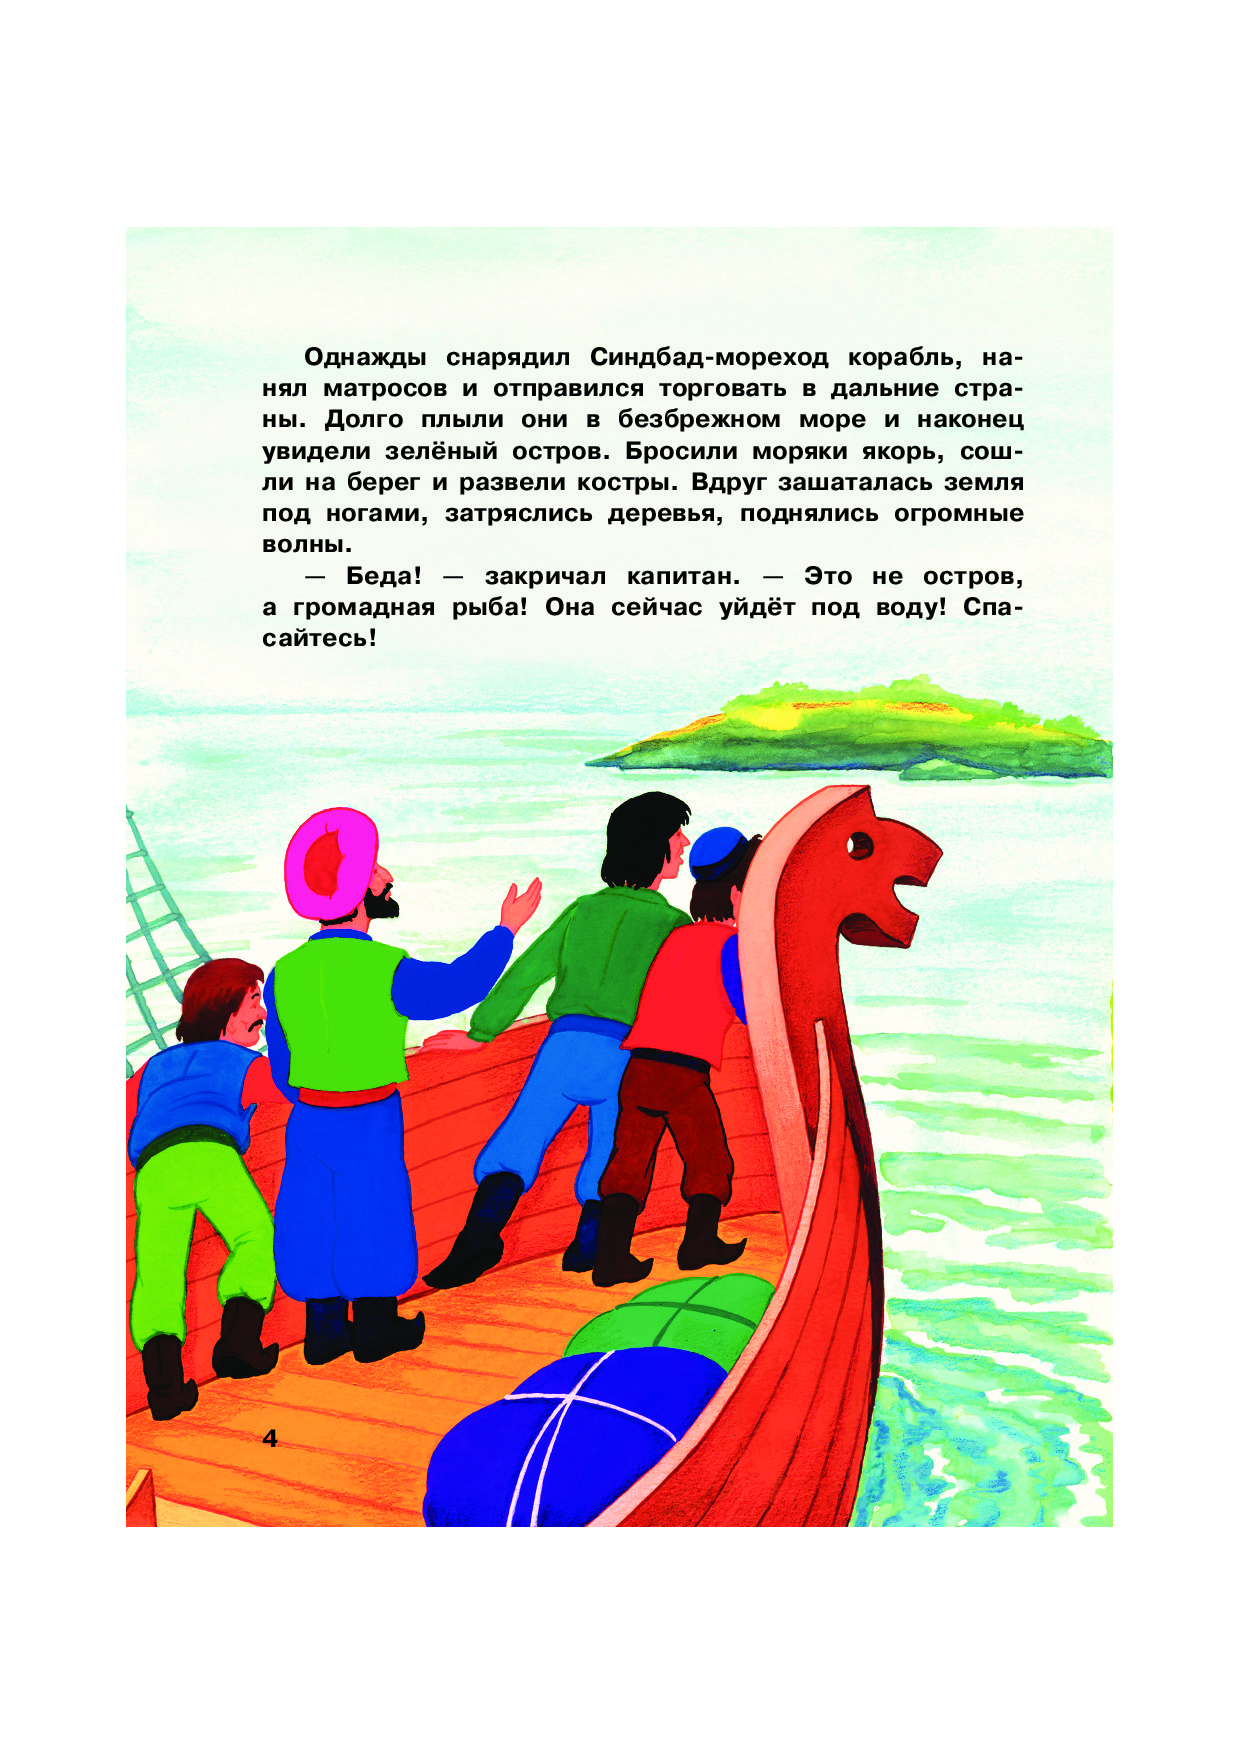 Иллюстрация к сказке о Синдбаде мореходе первое путешествие